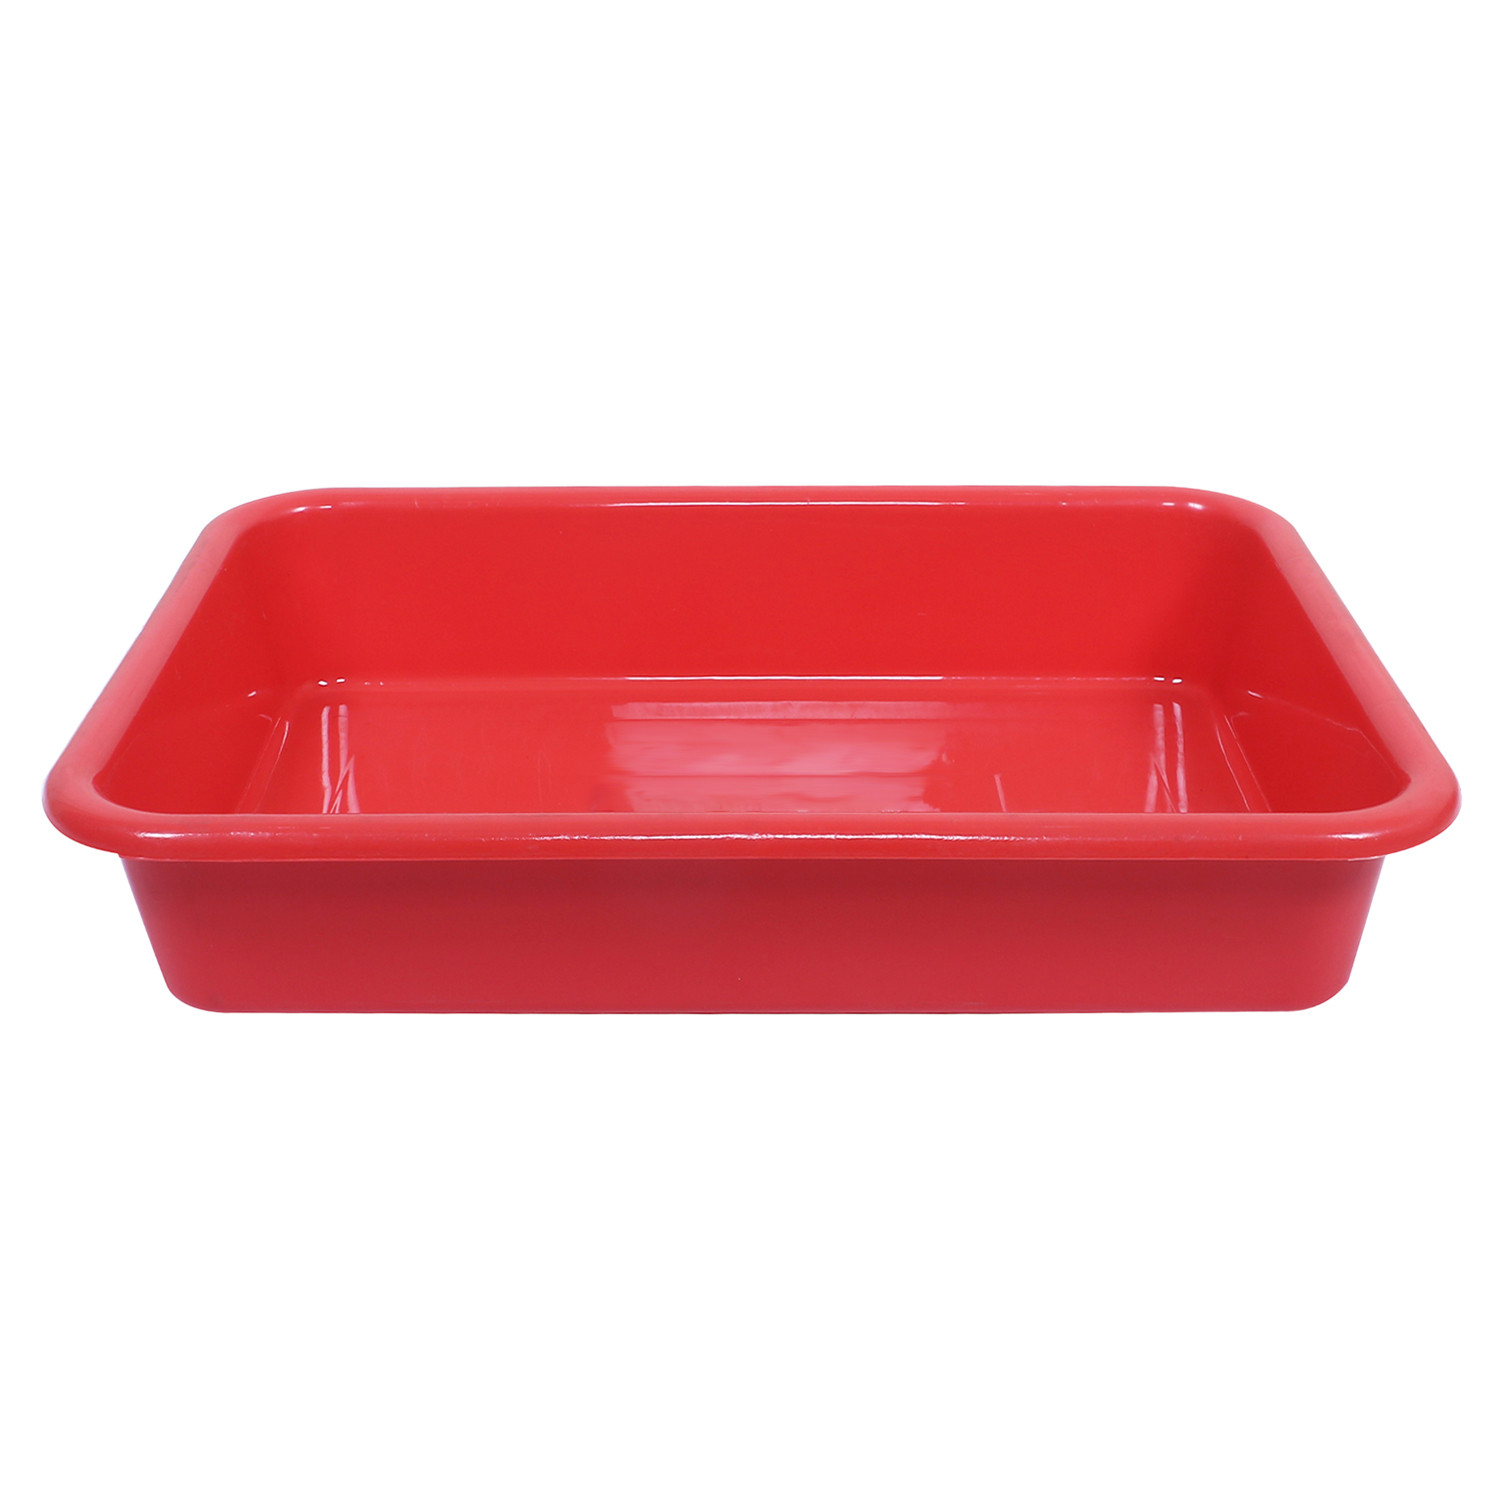 Kuber Industries Storage Tray|Versatile Plastic Storage Organizer|Rectangular Tray for Kitchen Storage|Storage Tray for office|Exel Tray 555|Pack of 2 (Blue & Red)